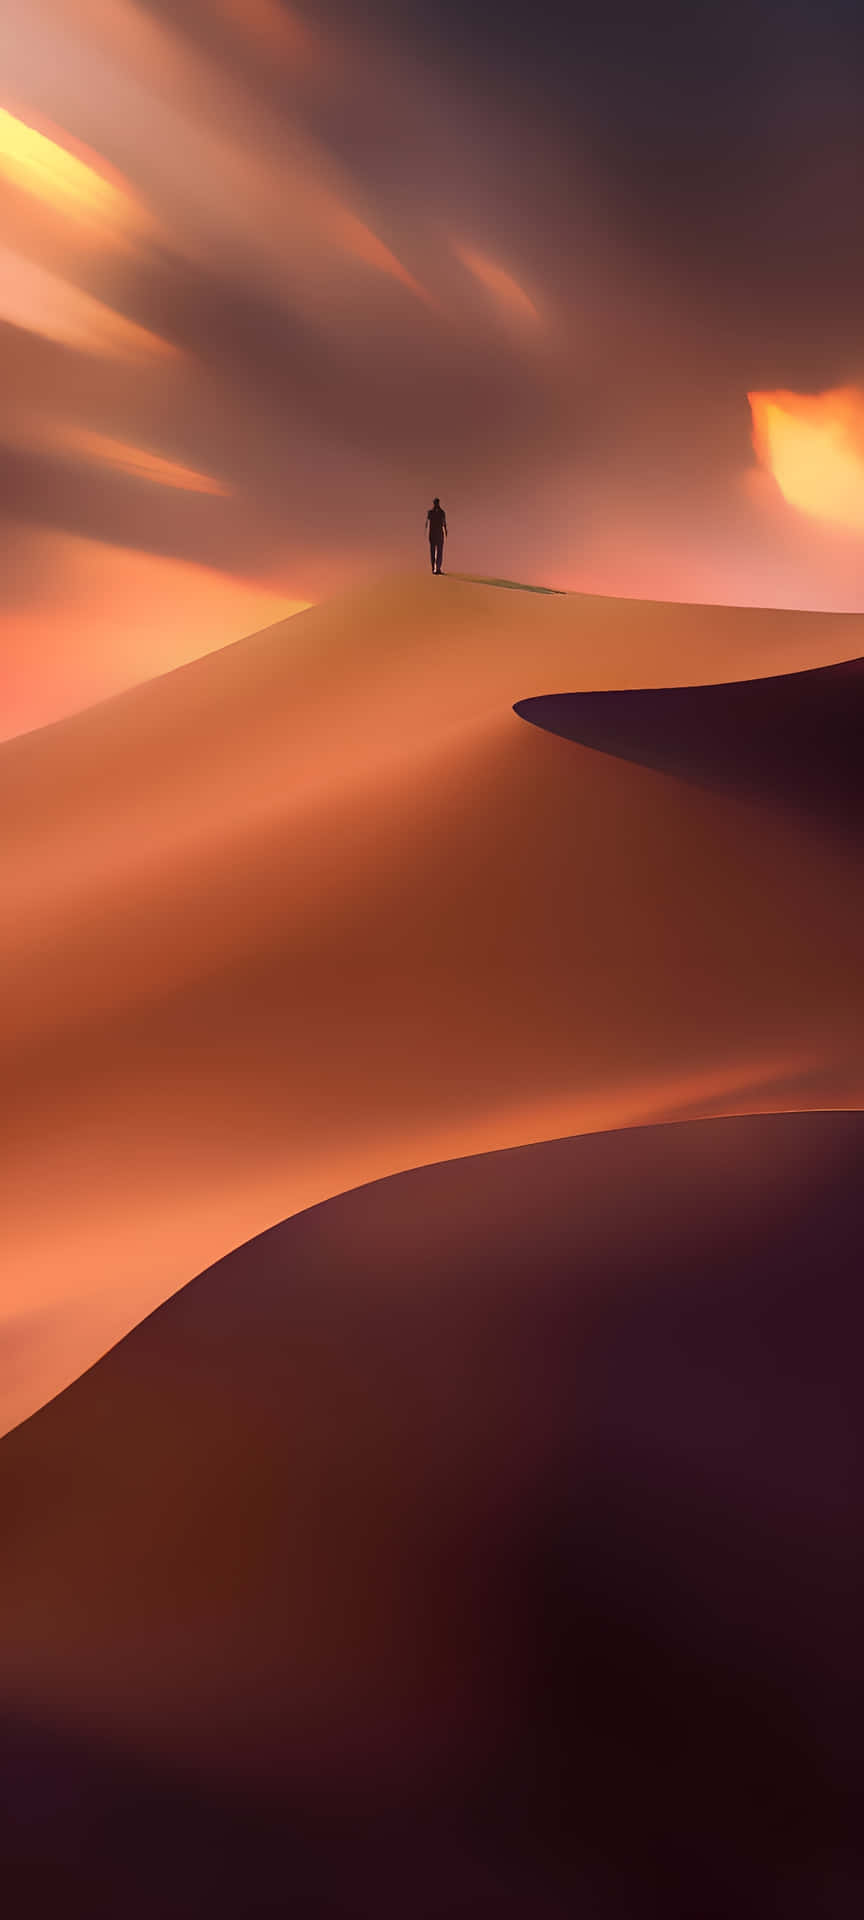 Capturala Belleza De La Naturaleza Con El Fondo De Pantalla Del Desierto En Tu Iphone. Fondo de pantalla